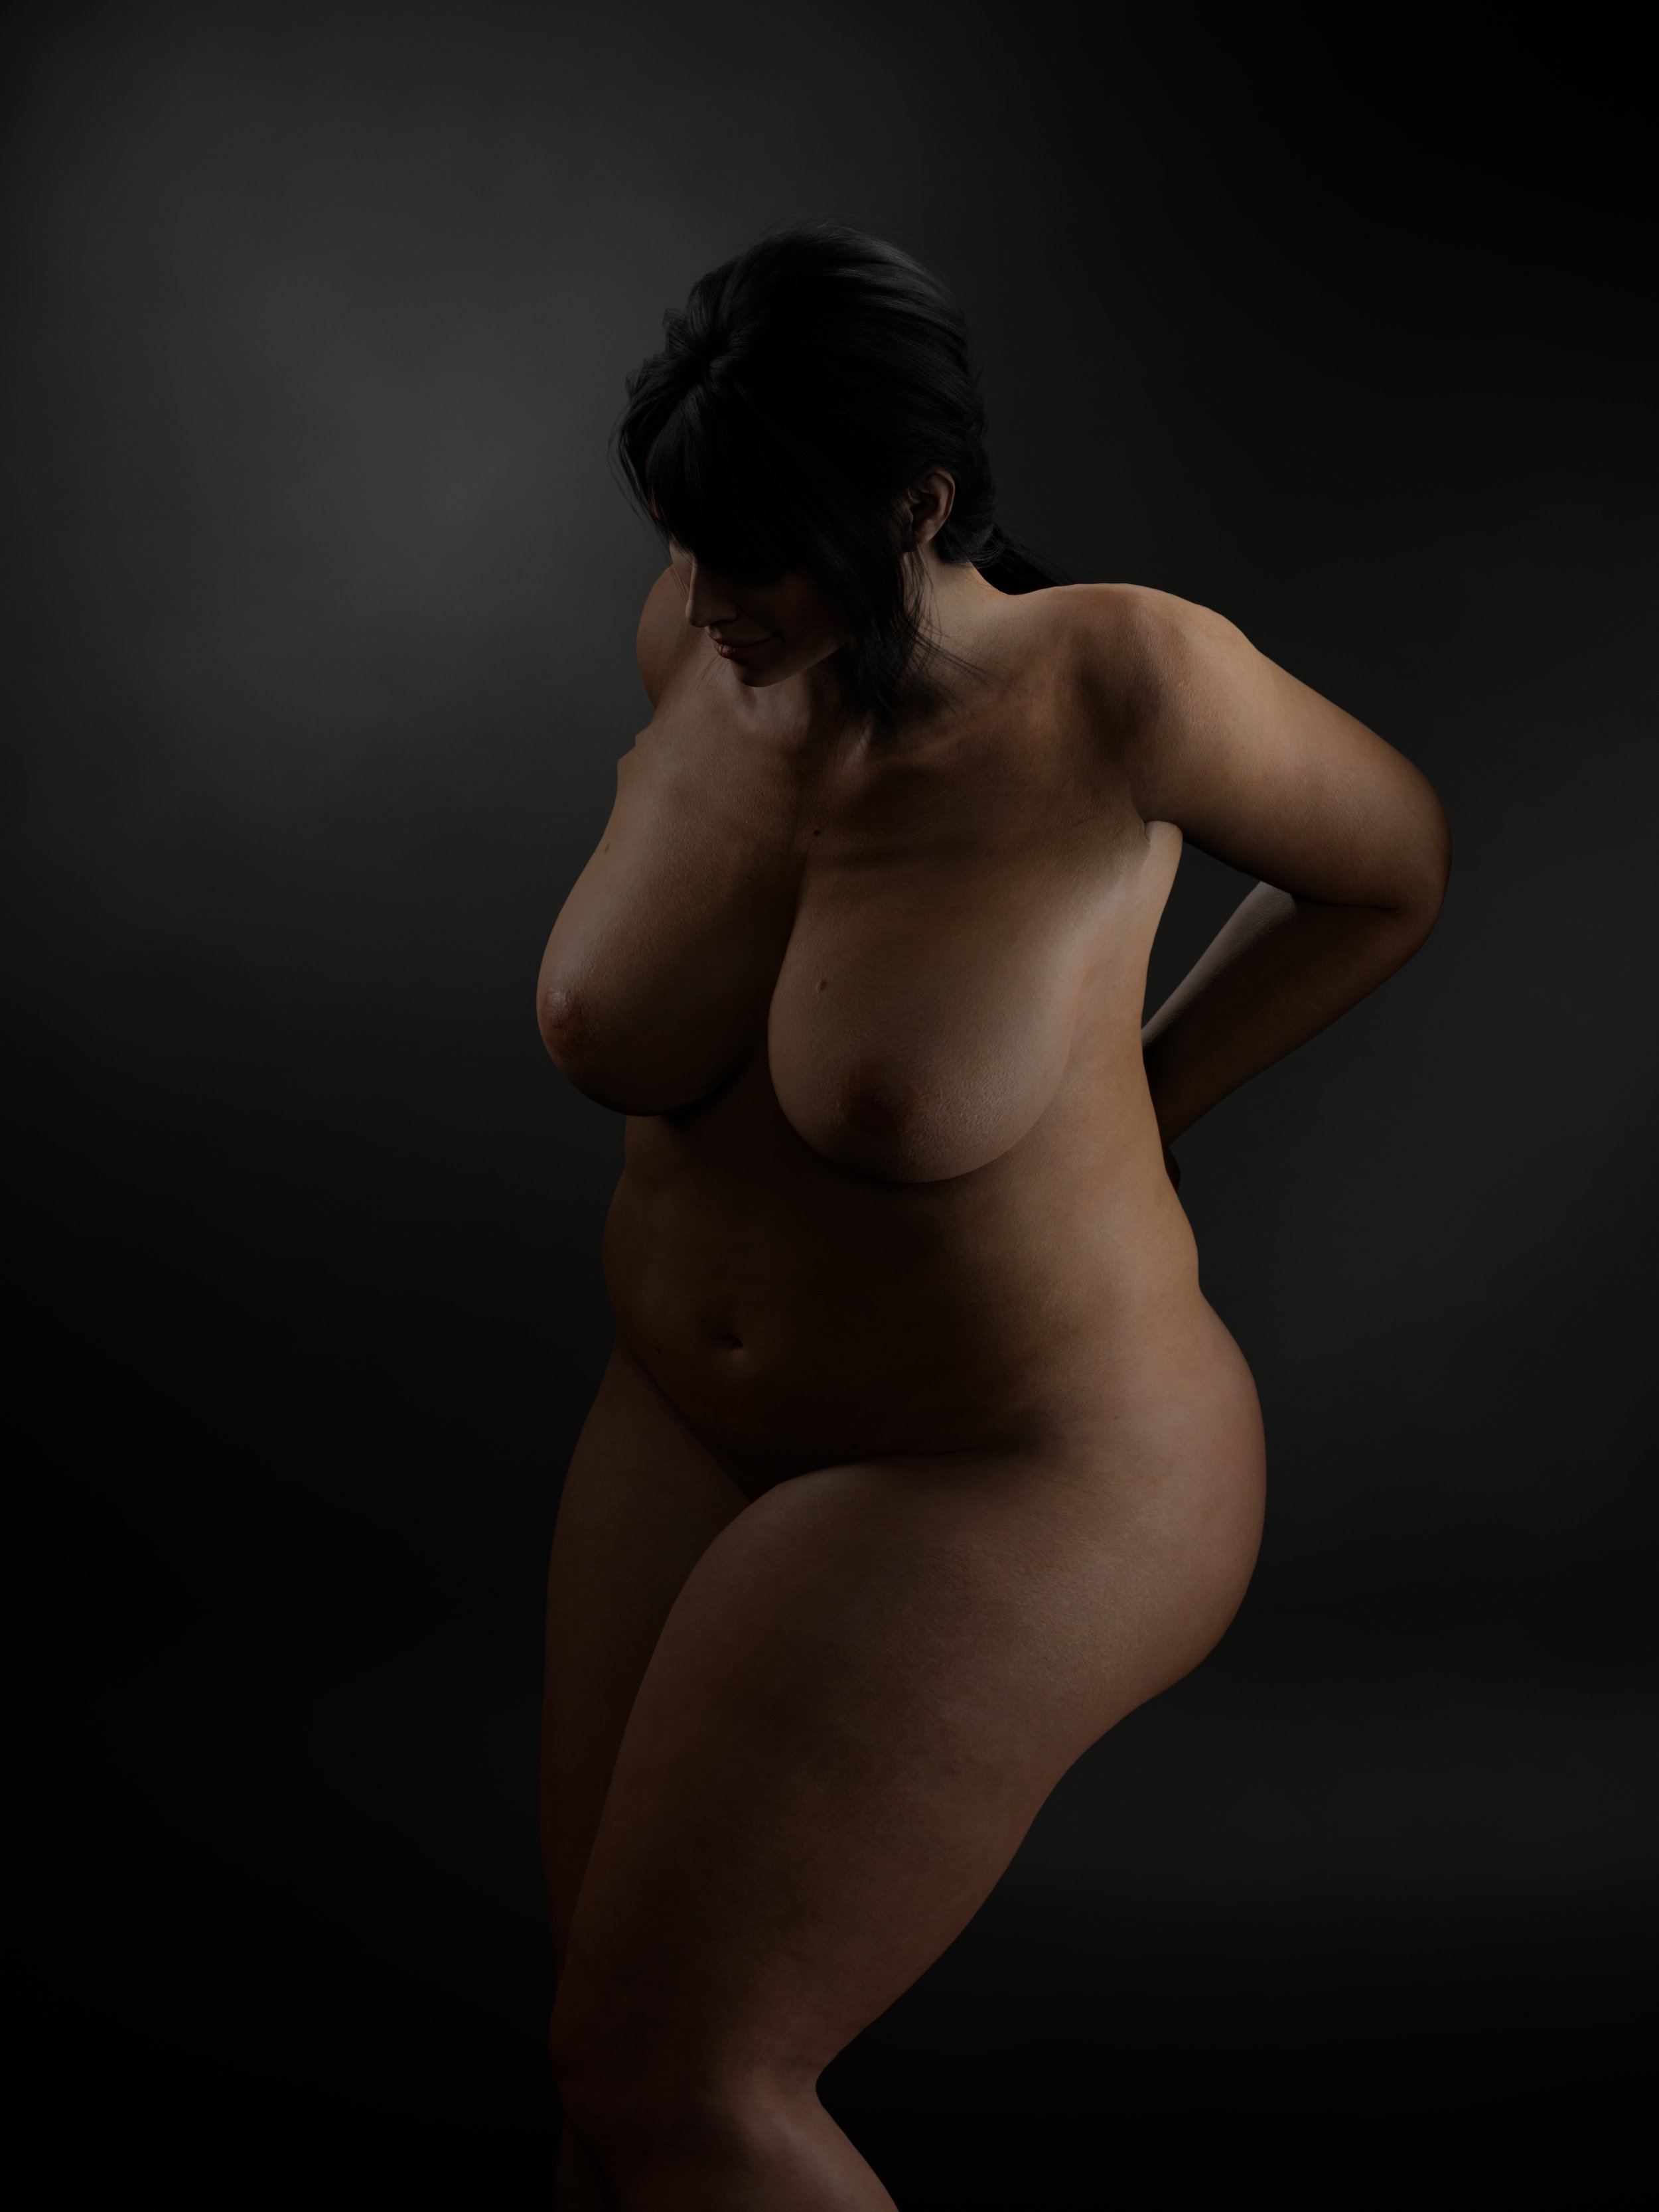 Posing plus size women for boudoir photos